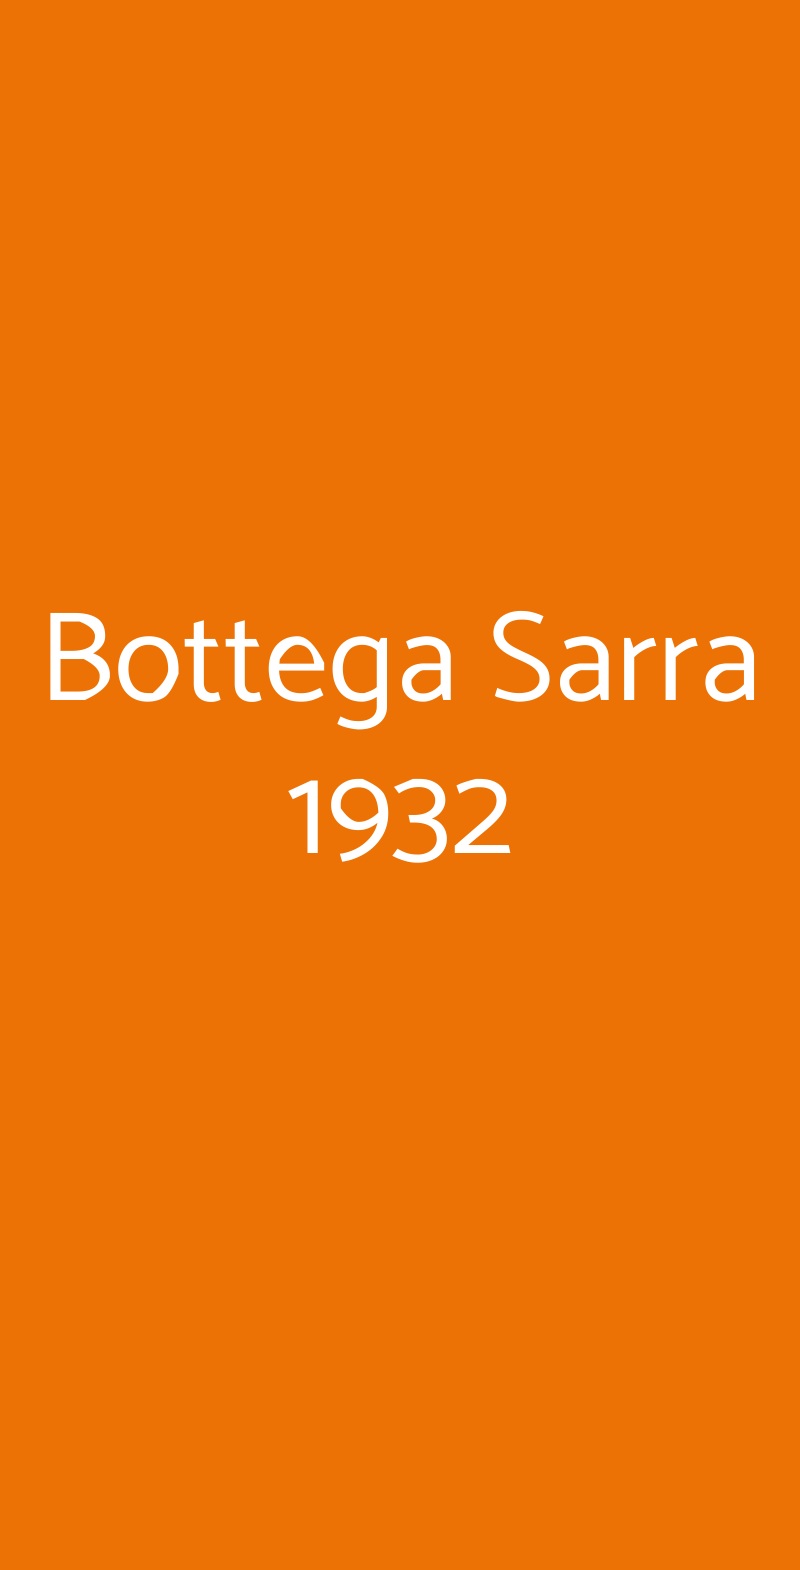 Bottega Sarra 1932 Terracina menù 1 pagina